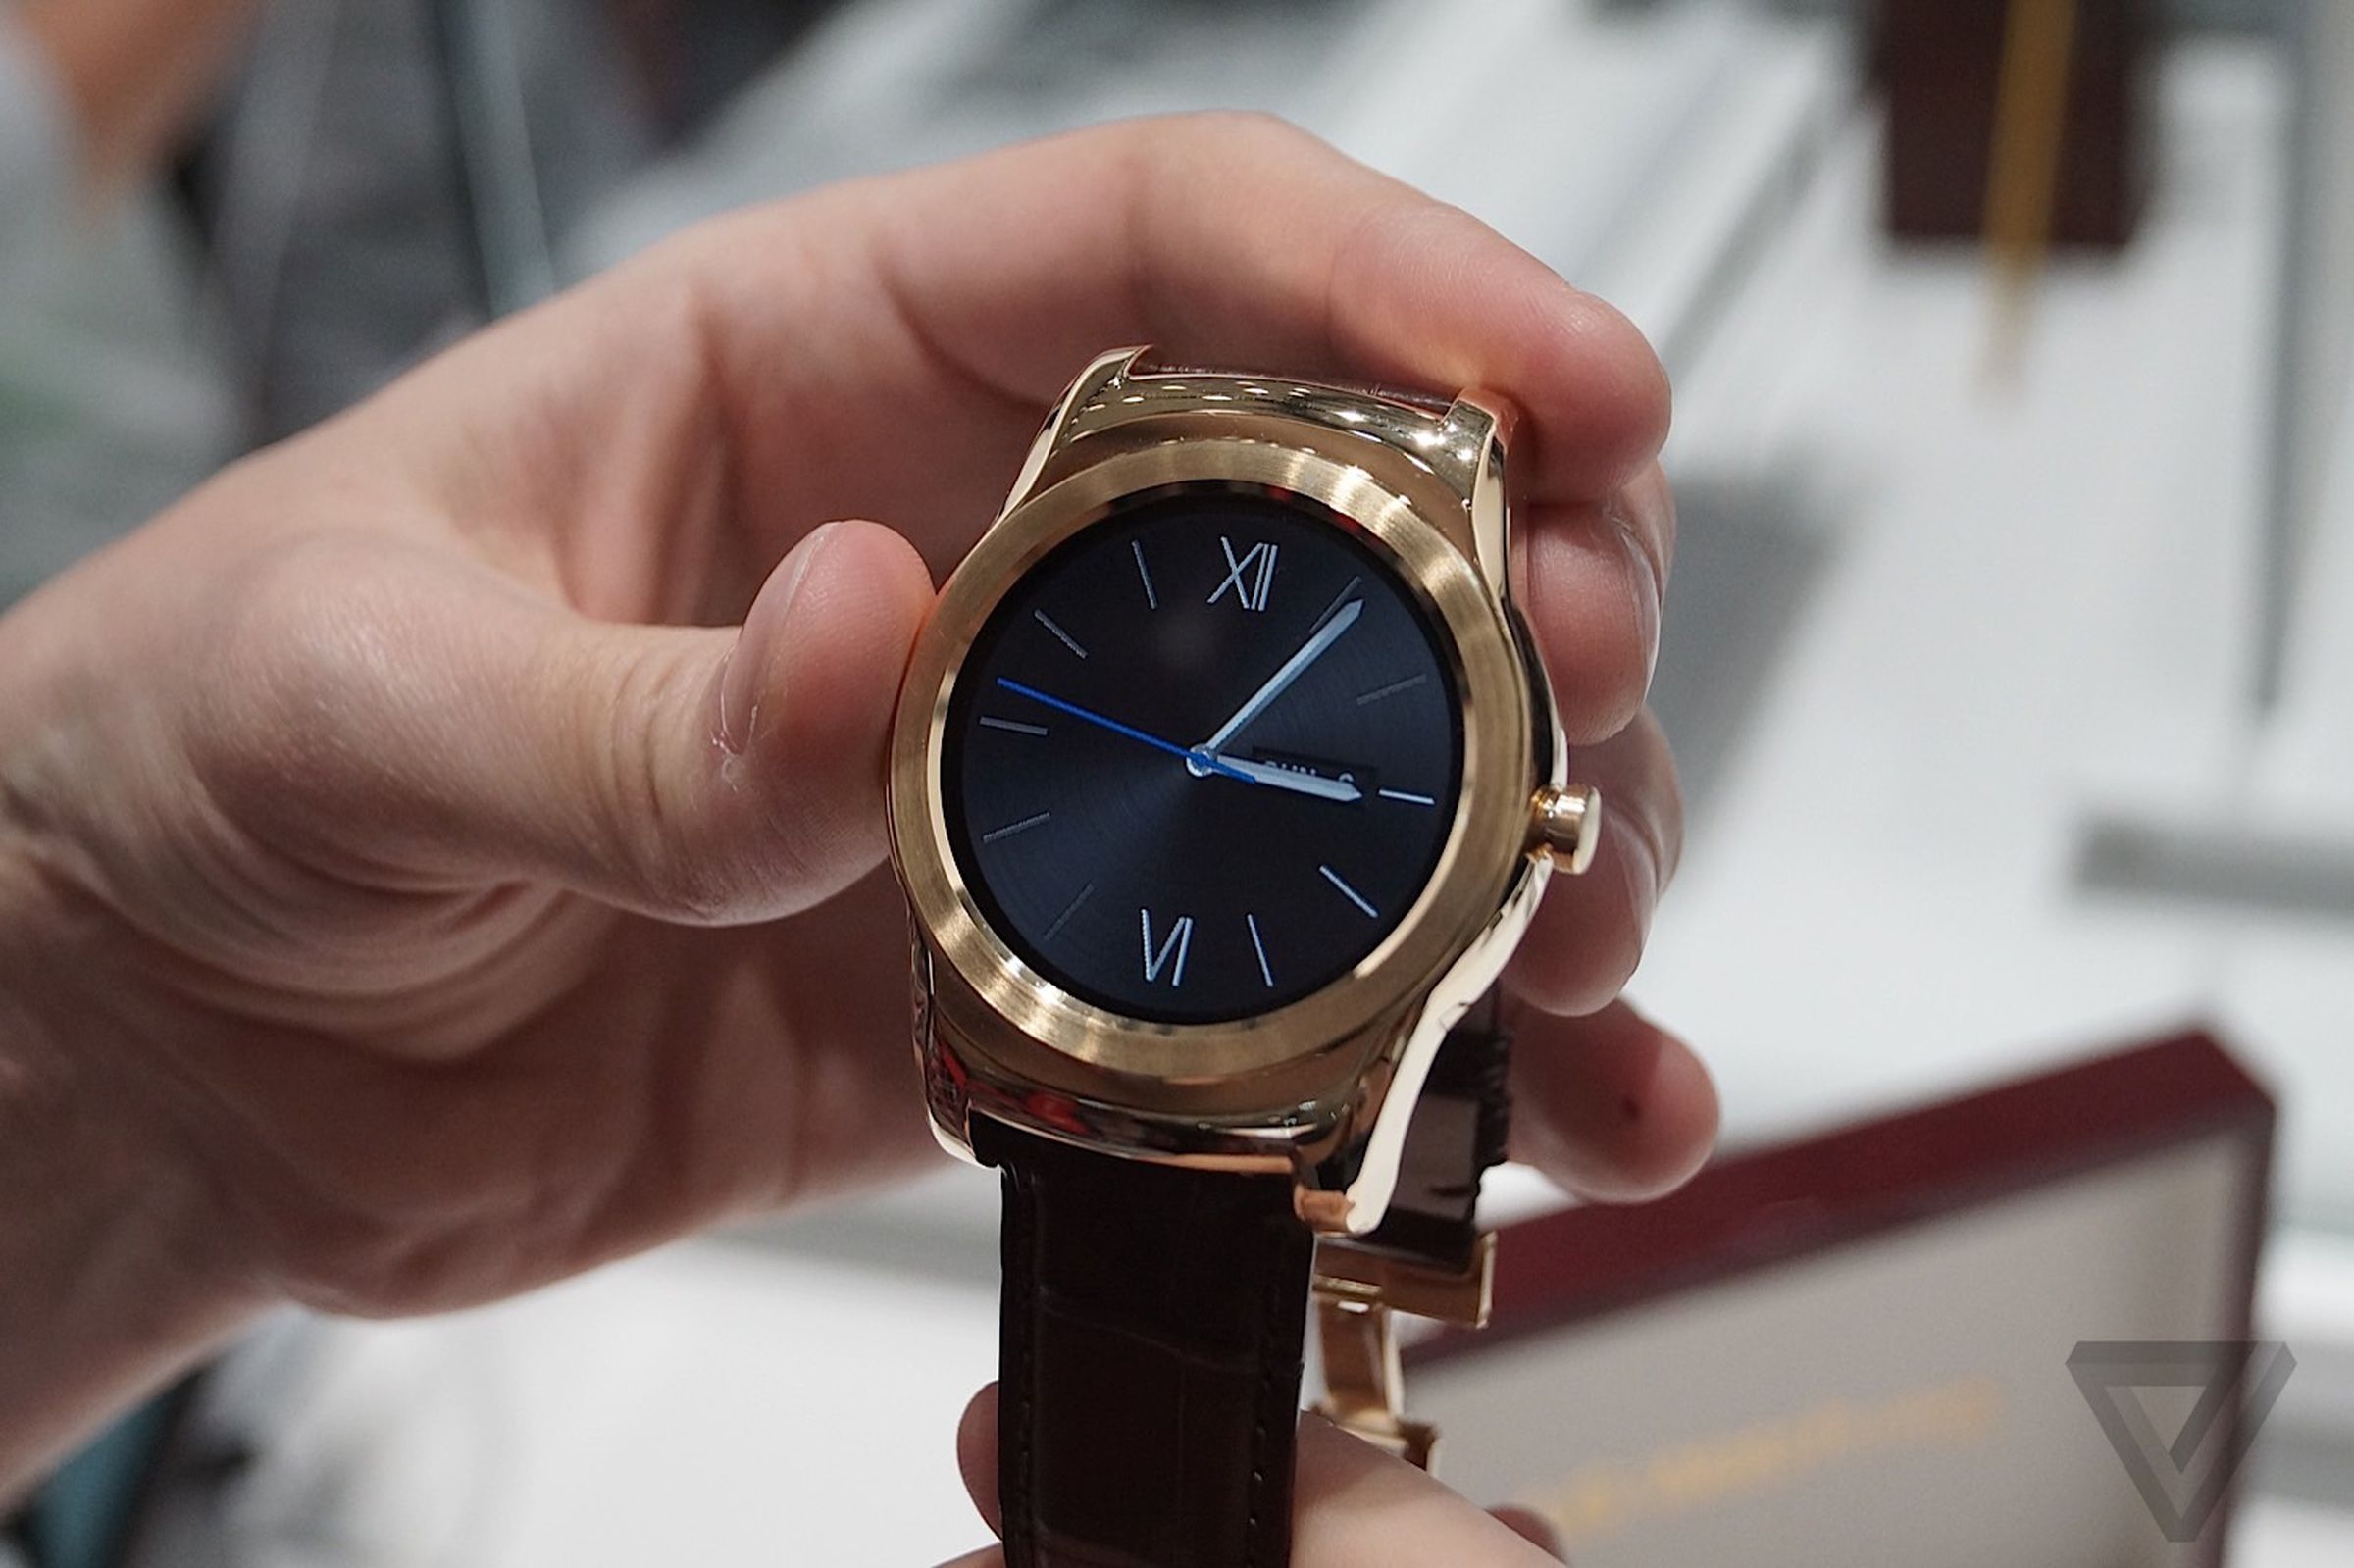 LG's 23-karat Urbane Lux smartwatch